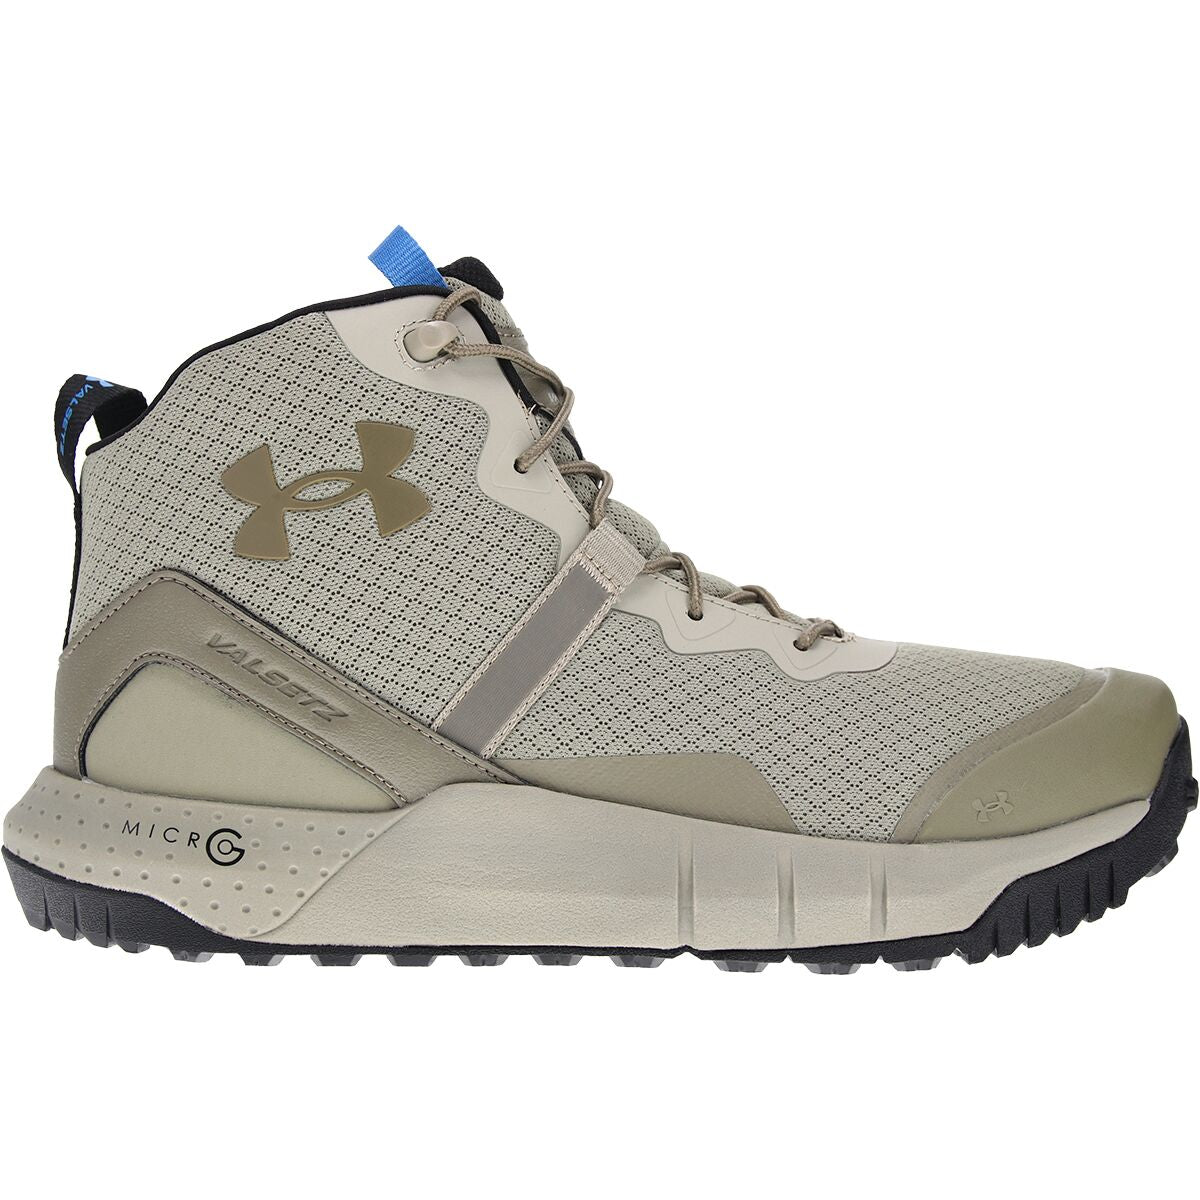 Men's Under Armour HOVR Infil GTX Waterproof Boots